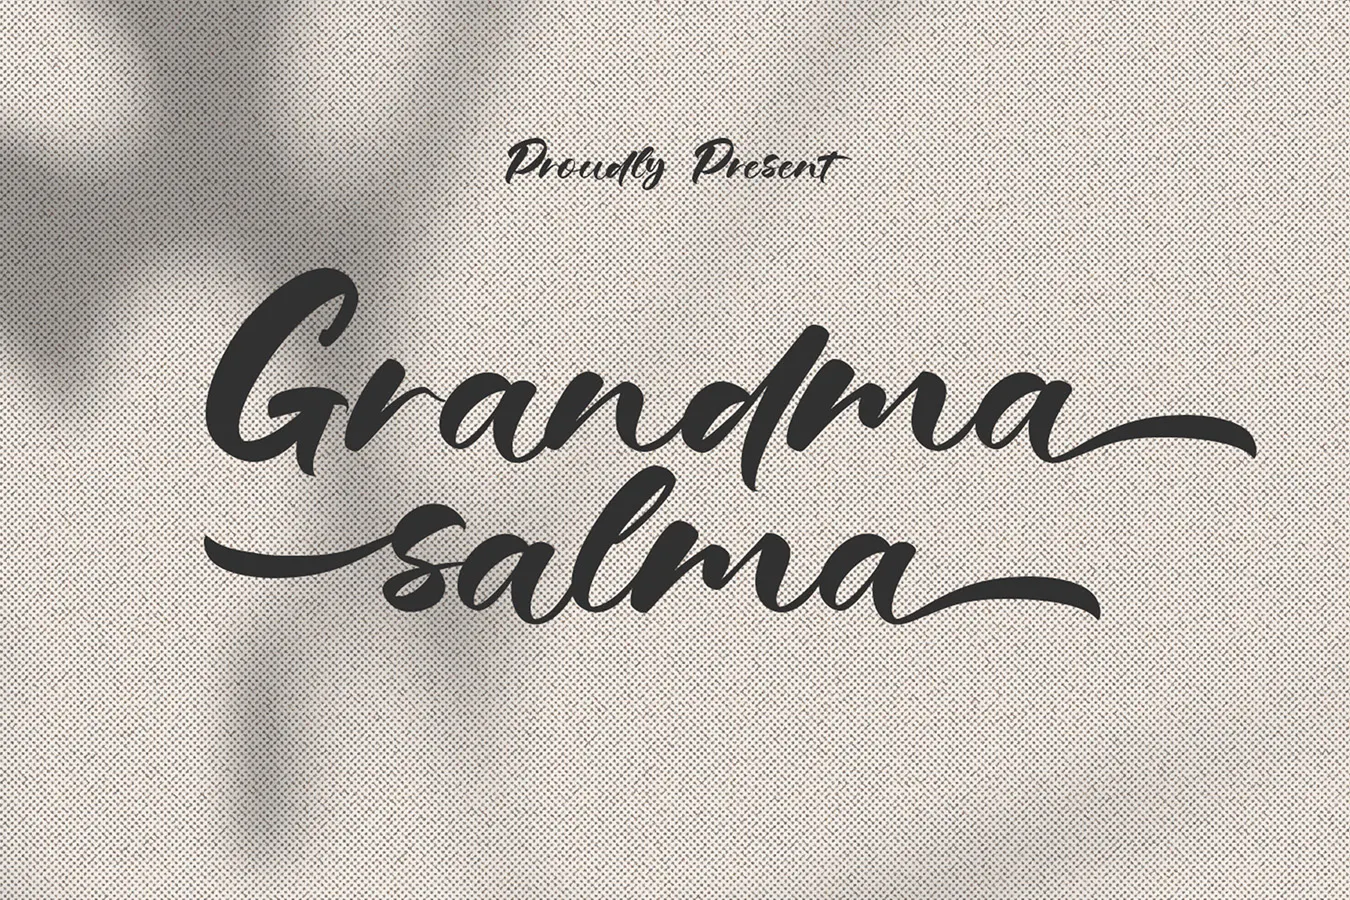 邀请函的英文手写签名字体 - Grandma Salma 设计字体 第2张